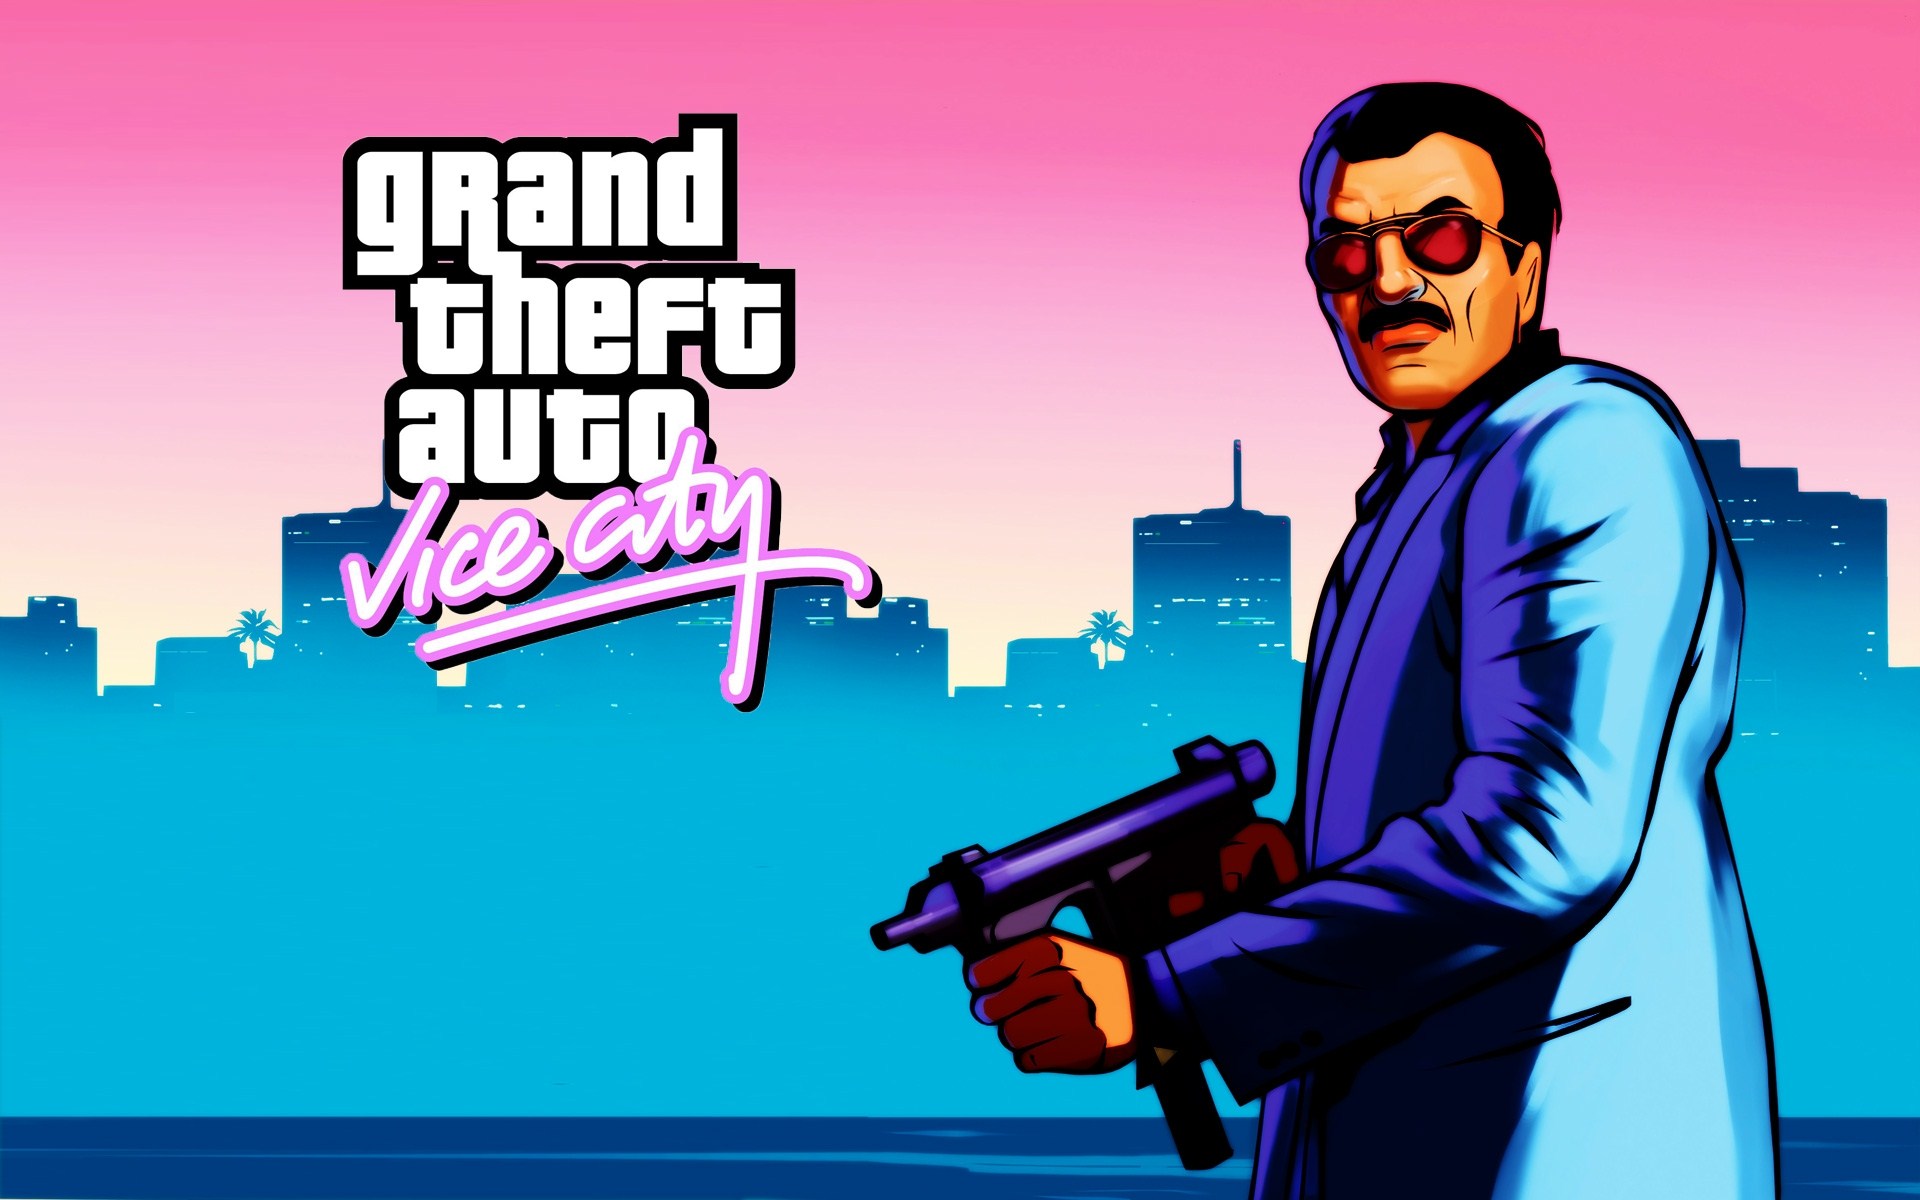 Скачать обои Grand Theft Auto: Вайс Сити на телефон бесплатно